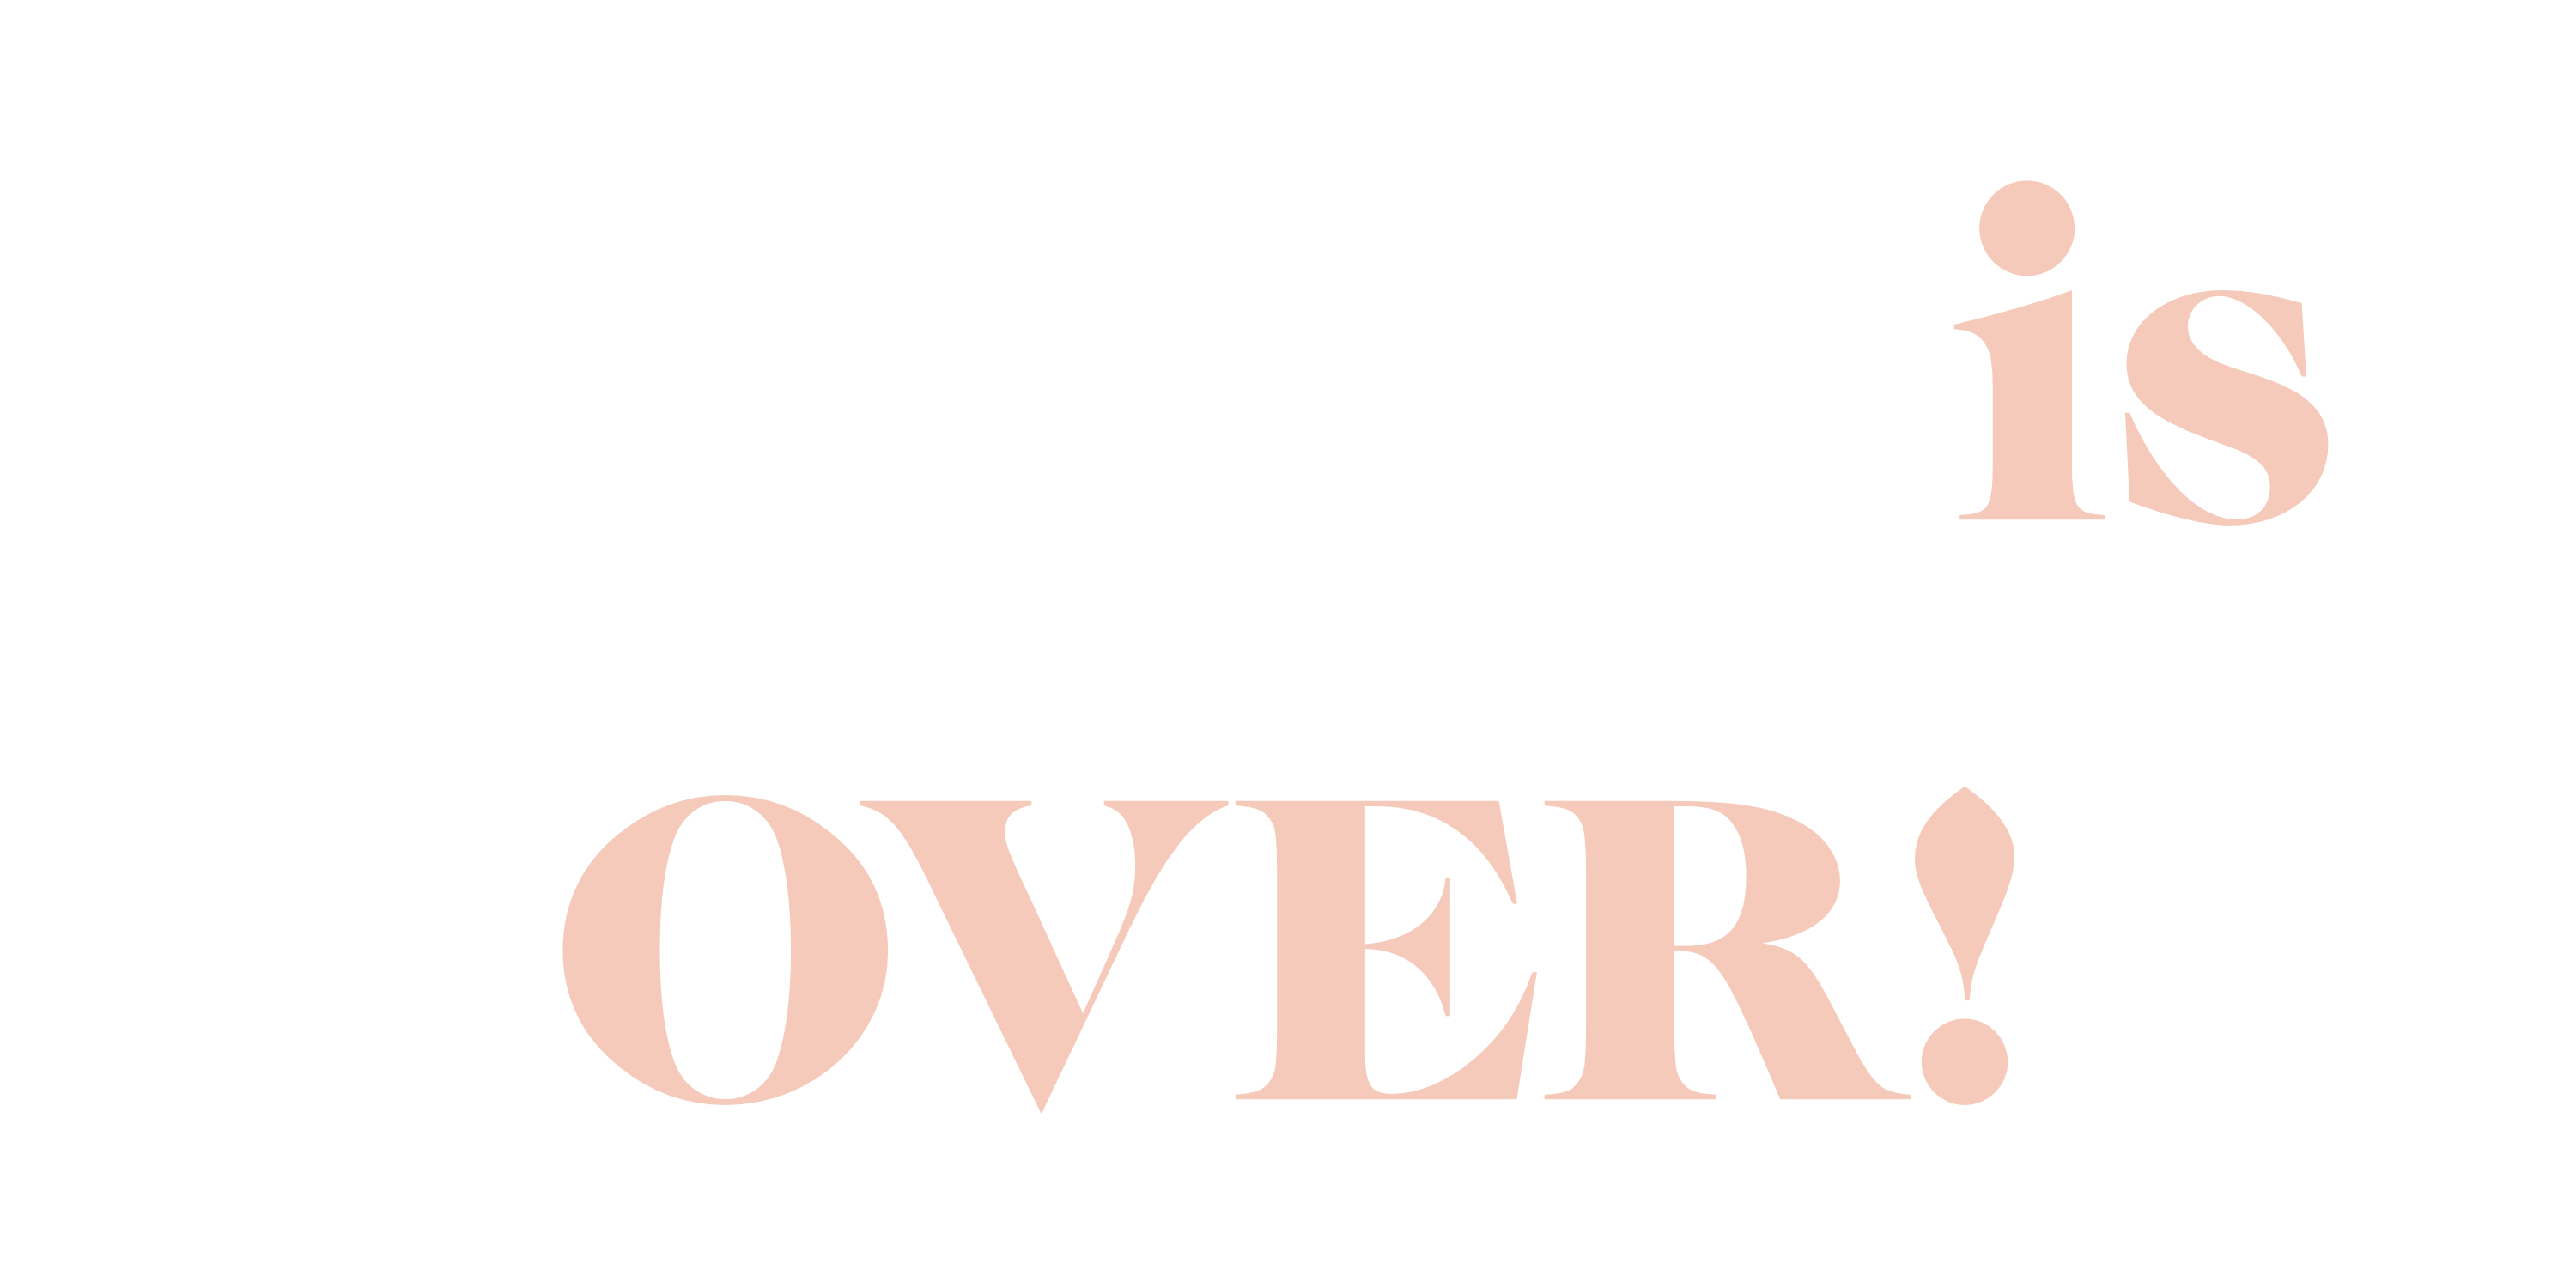 Koyvoca-is-over-book-banner